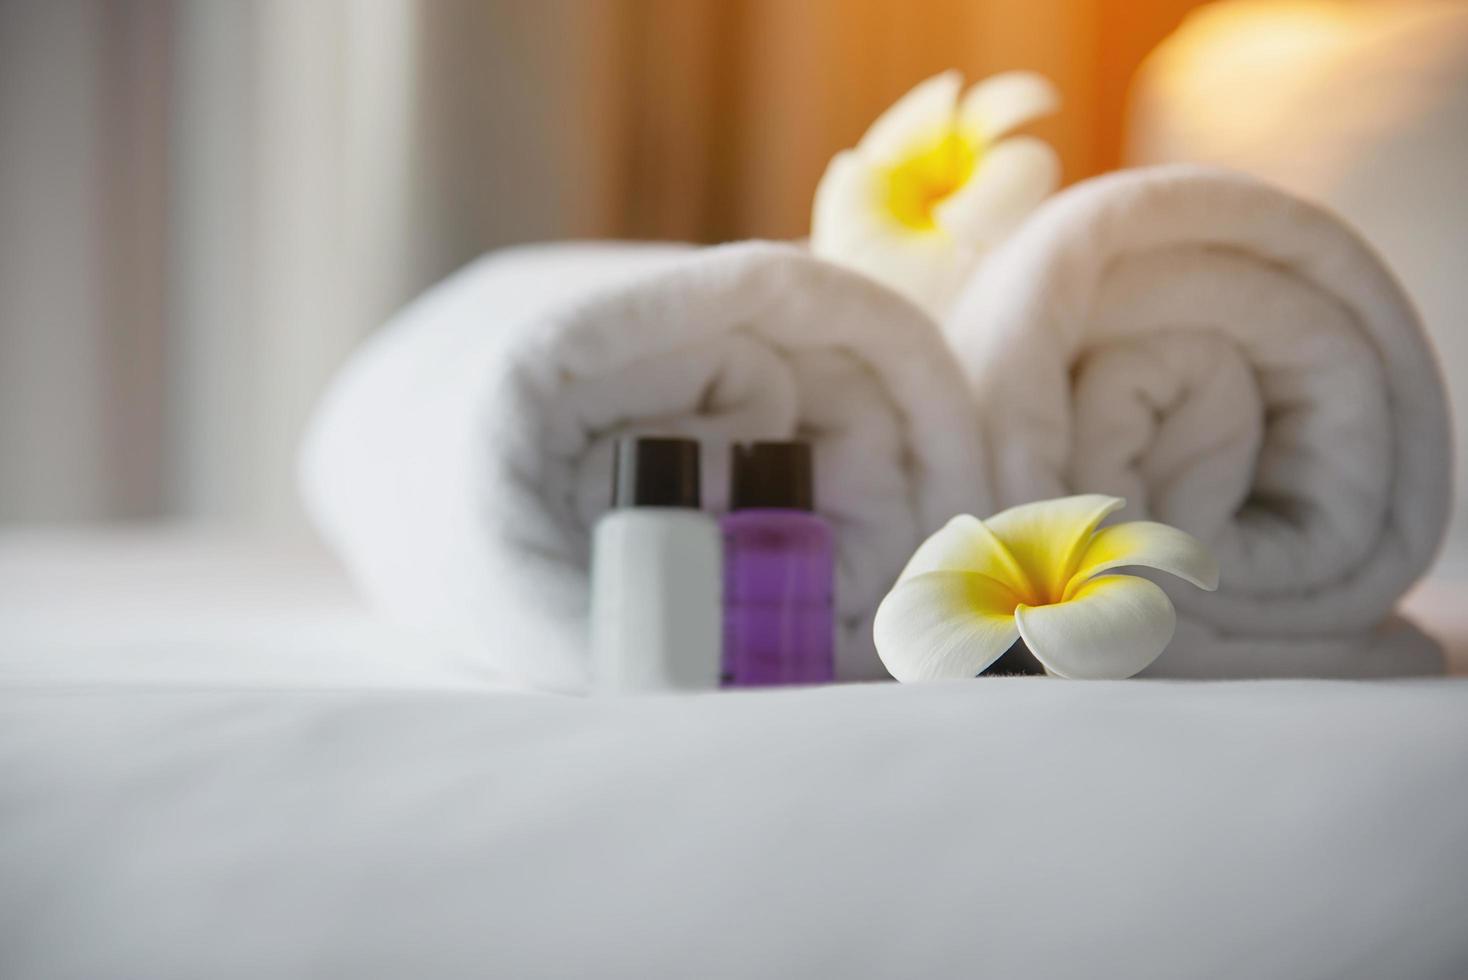 Hotelhandtuch und Shampoo- und Seifenbadflasche auf weißem Bett mit Plumeria-Blume dekoriert - Relax-Urlaub im Hotel-Resort-Konzept foto